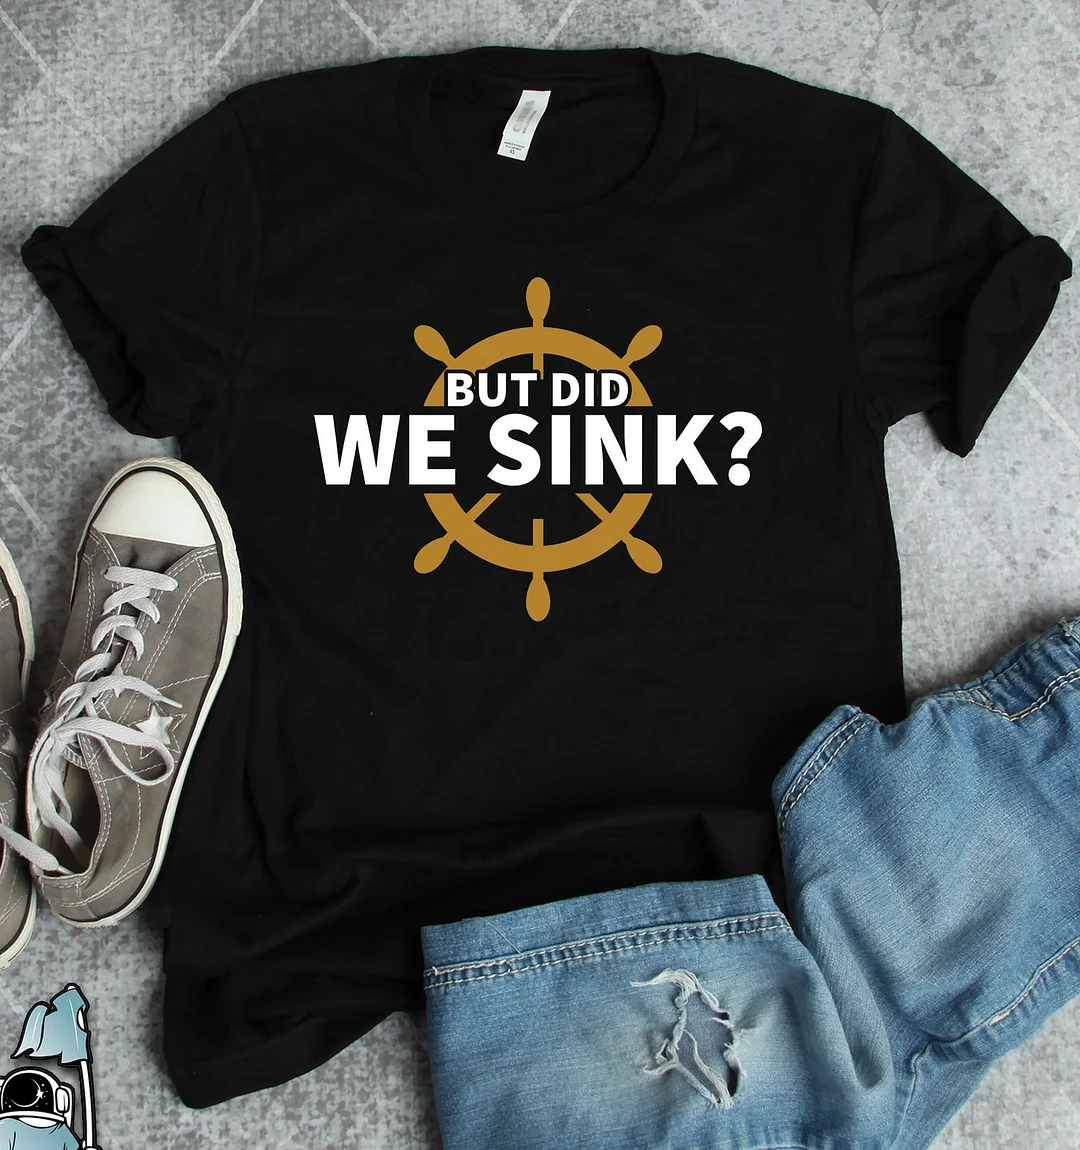 Captain Shirt Boat Cruise Ship Sailing Gift Sailboat Boating Tshirt Gifts Gift Top Tees